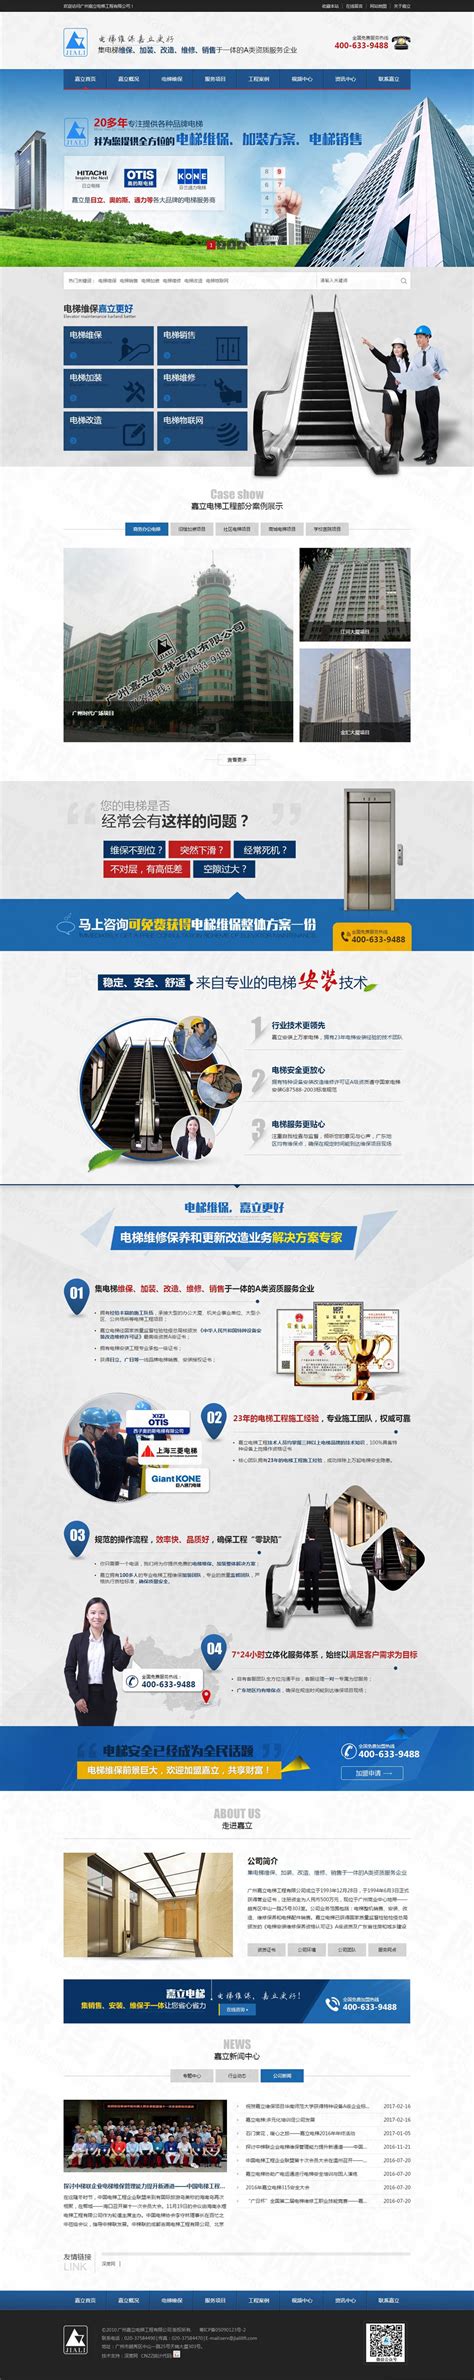 广州嘉立电梯工程营销型网站案例-深度网